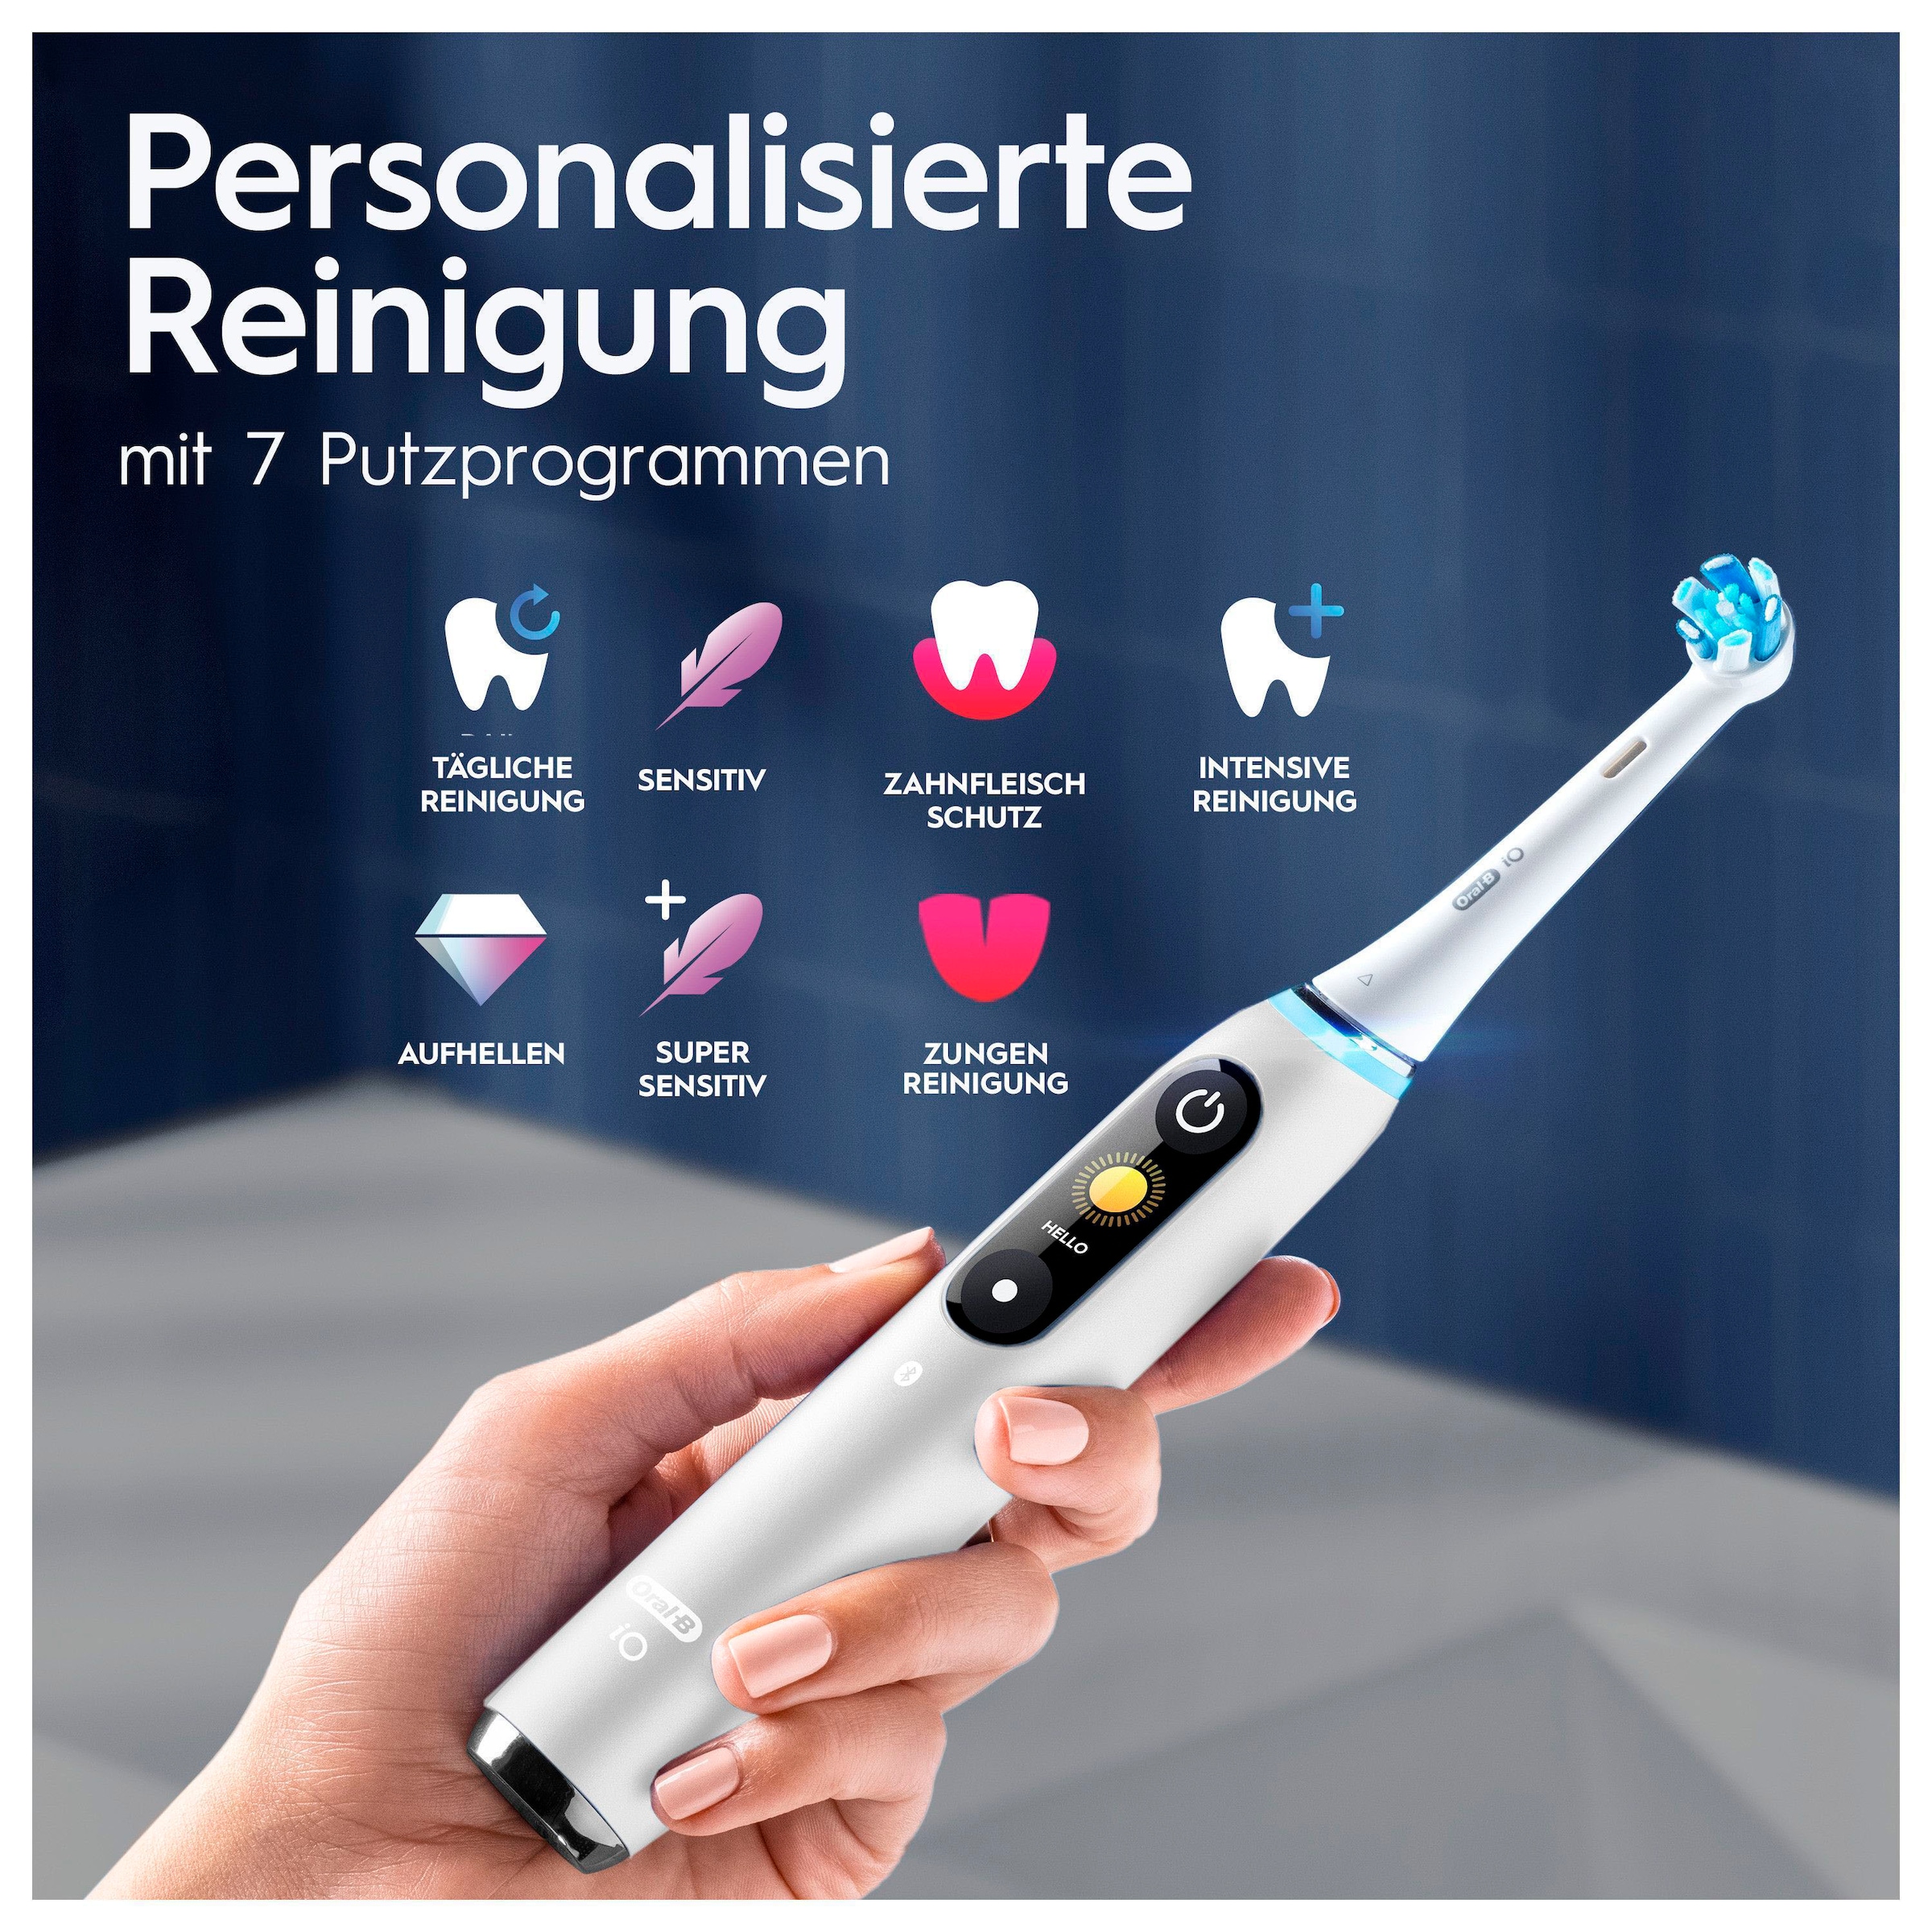 Oral-B Elektrische Zahnbürste »iO 9«, 2 St. Aufsteckbürsten, mit Magnet-Technologie, 7 Putzmodi, Farbdisplay & Lade-Reiseetui